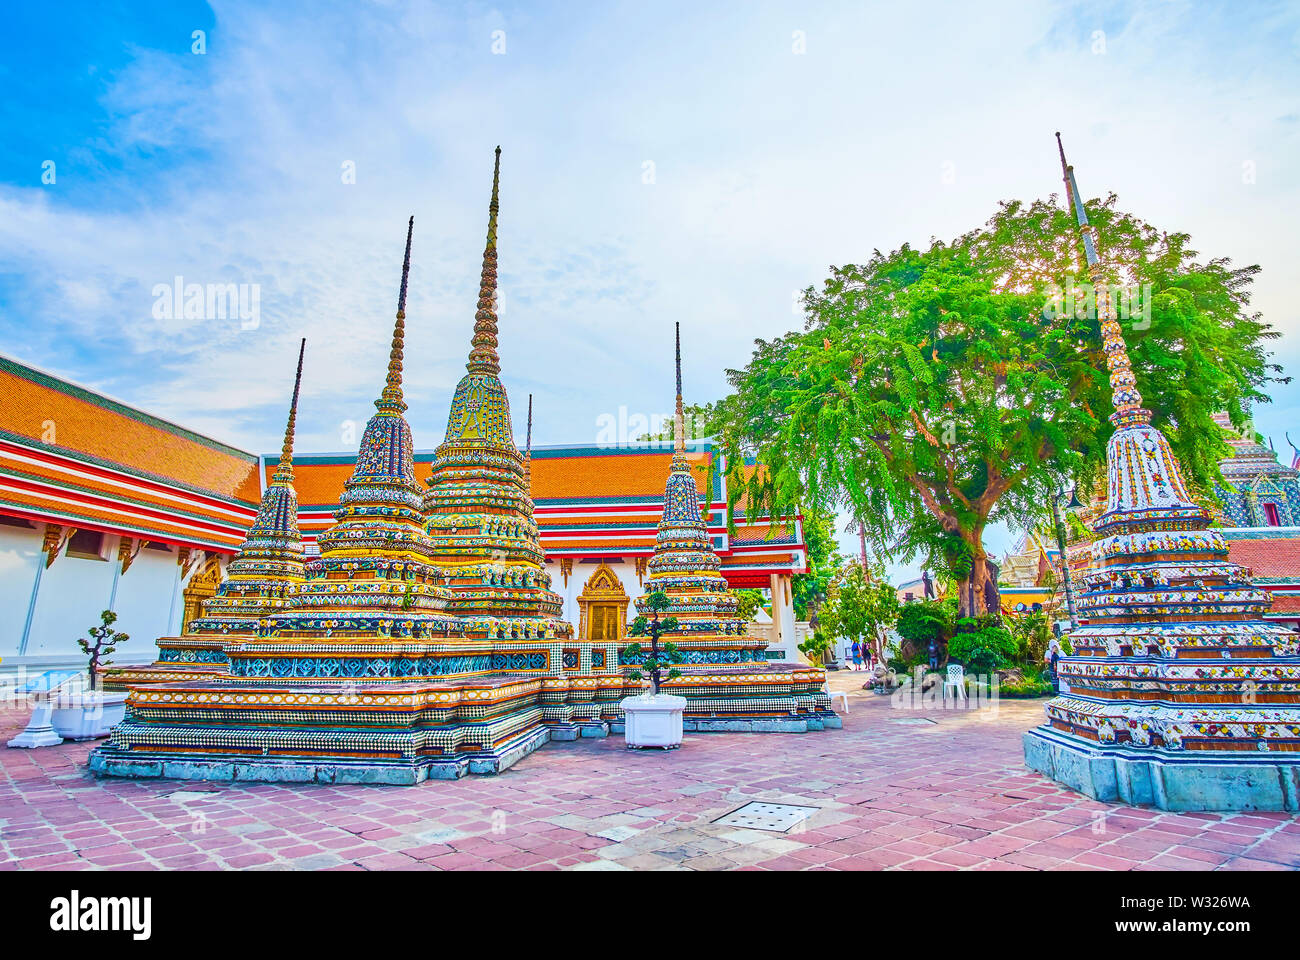 Die Dekoration der Heiligtümer und chedis (Stupas) Der Wat Pho Tempel ist ein schönes Beispiel für die einzigartige thailändische Religion Architektur, Bangkok, Thailand Stockfoto